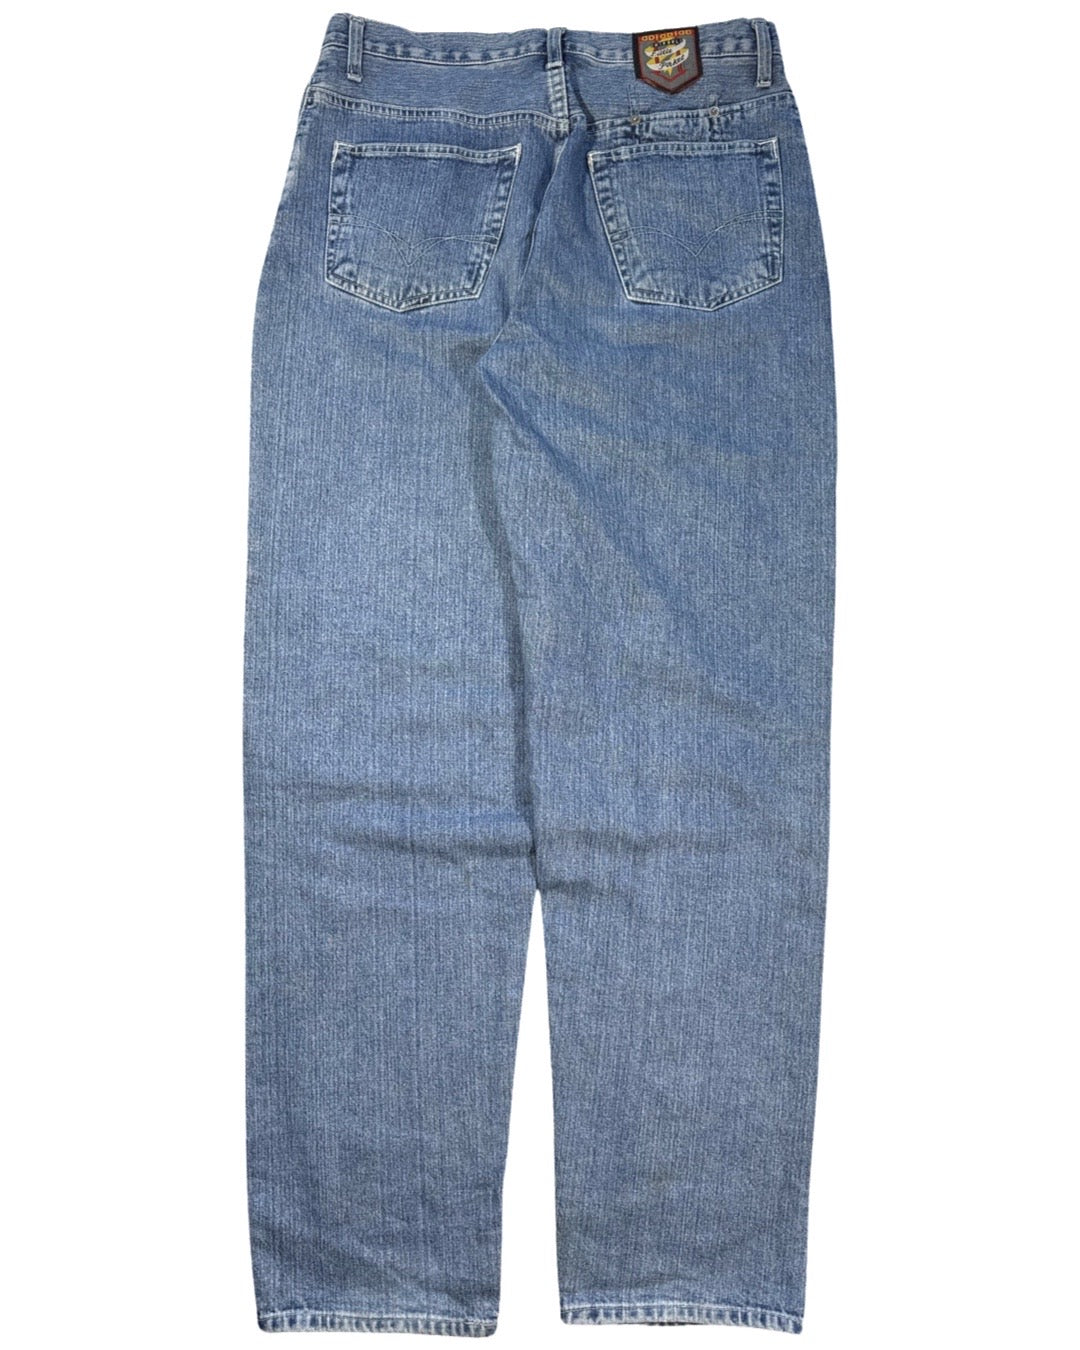 Vintage Diesel Loose Jeans - W 32"